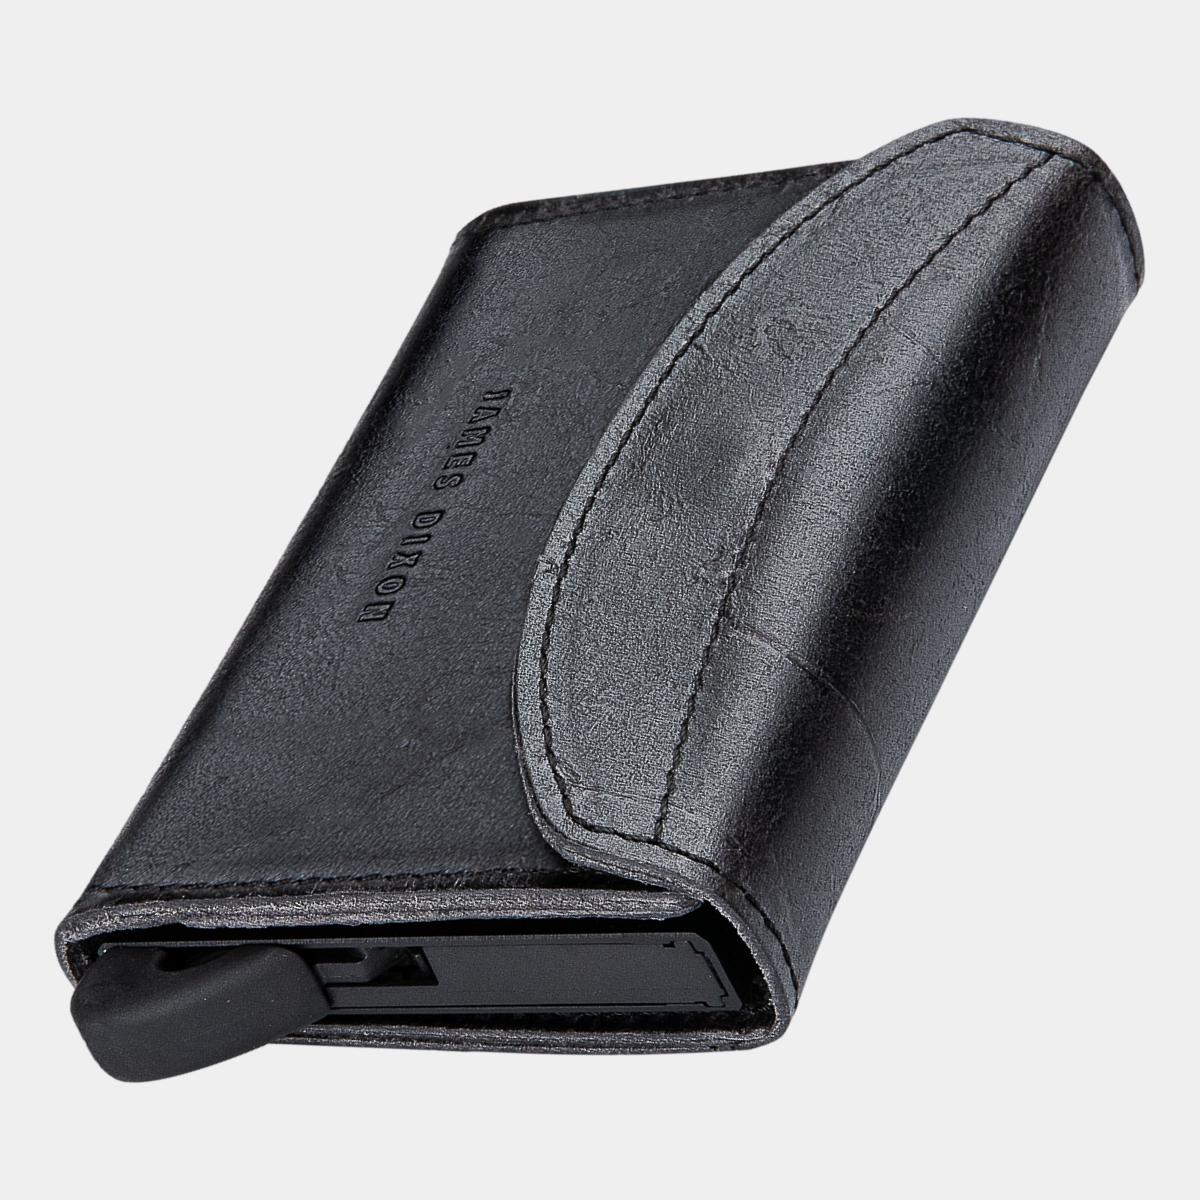 Grande Raw - All Black - Coin Pocket